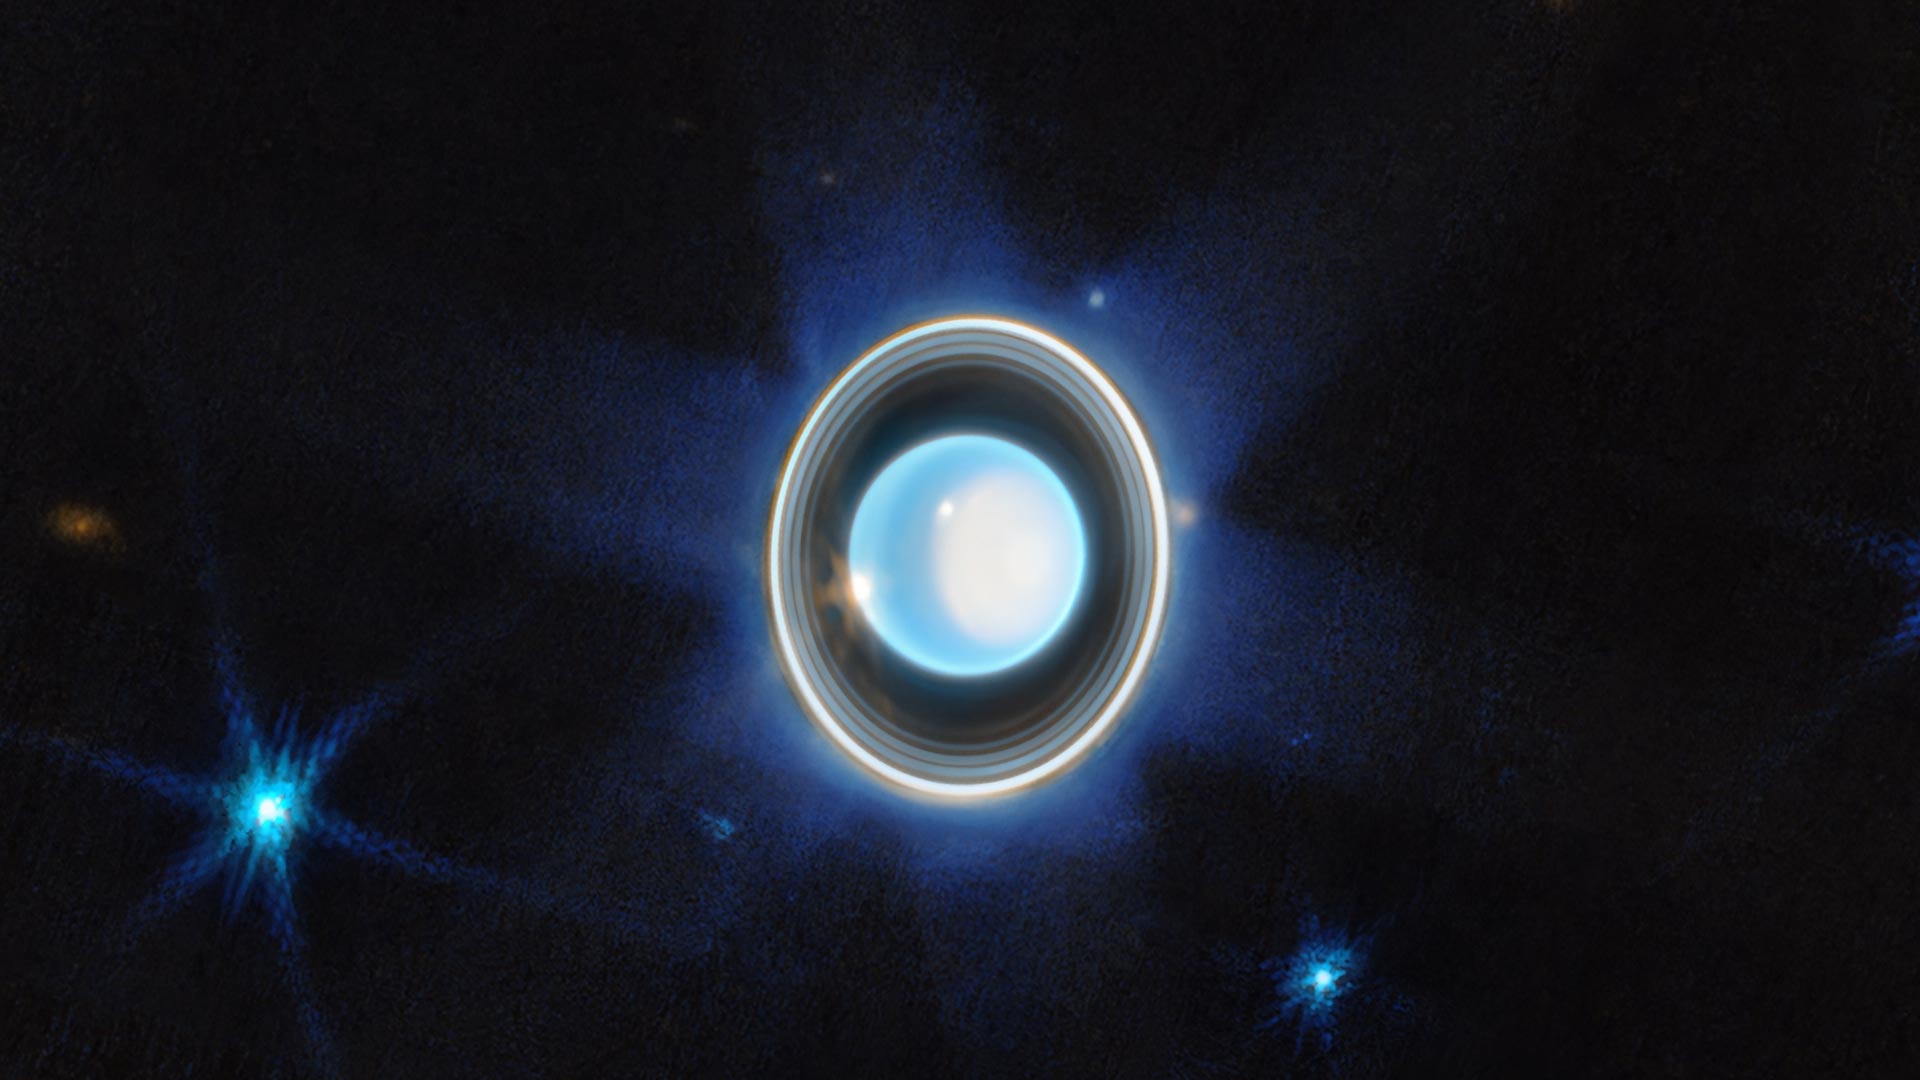 Ослепительные кольца и потрясающе динамичная атмосфера в потрясающем новом виде Уэбба на ледяном гиганте Уране.